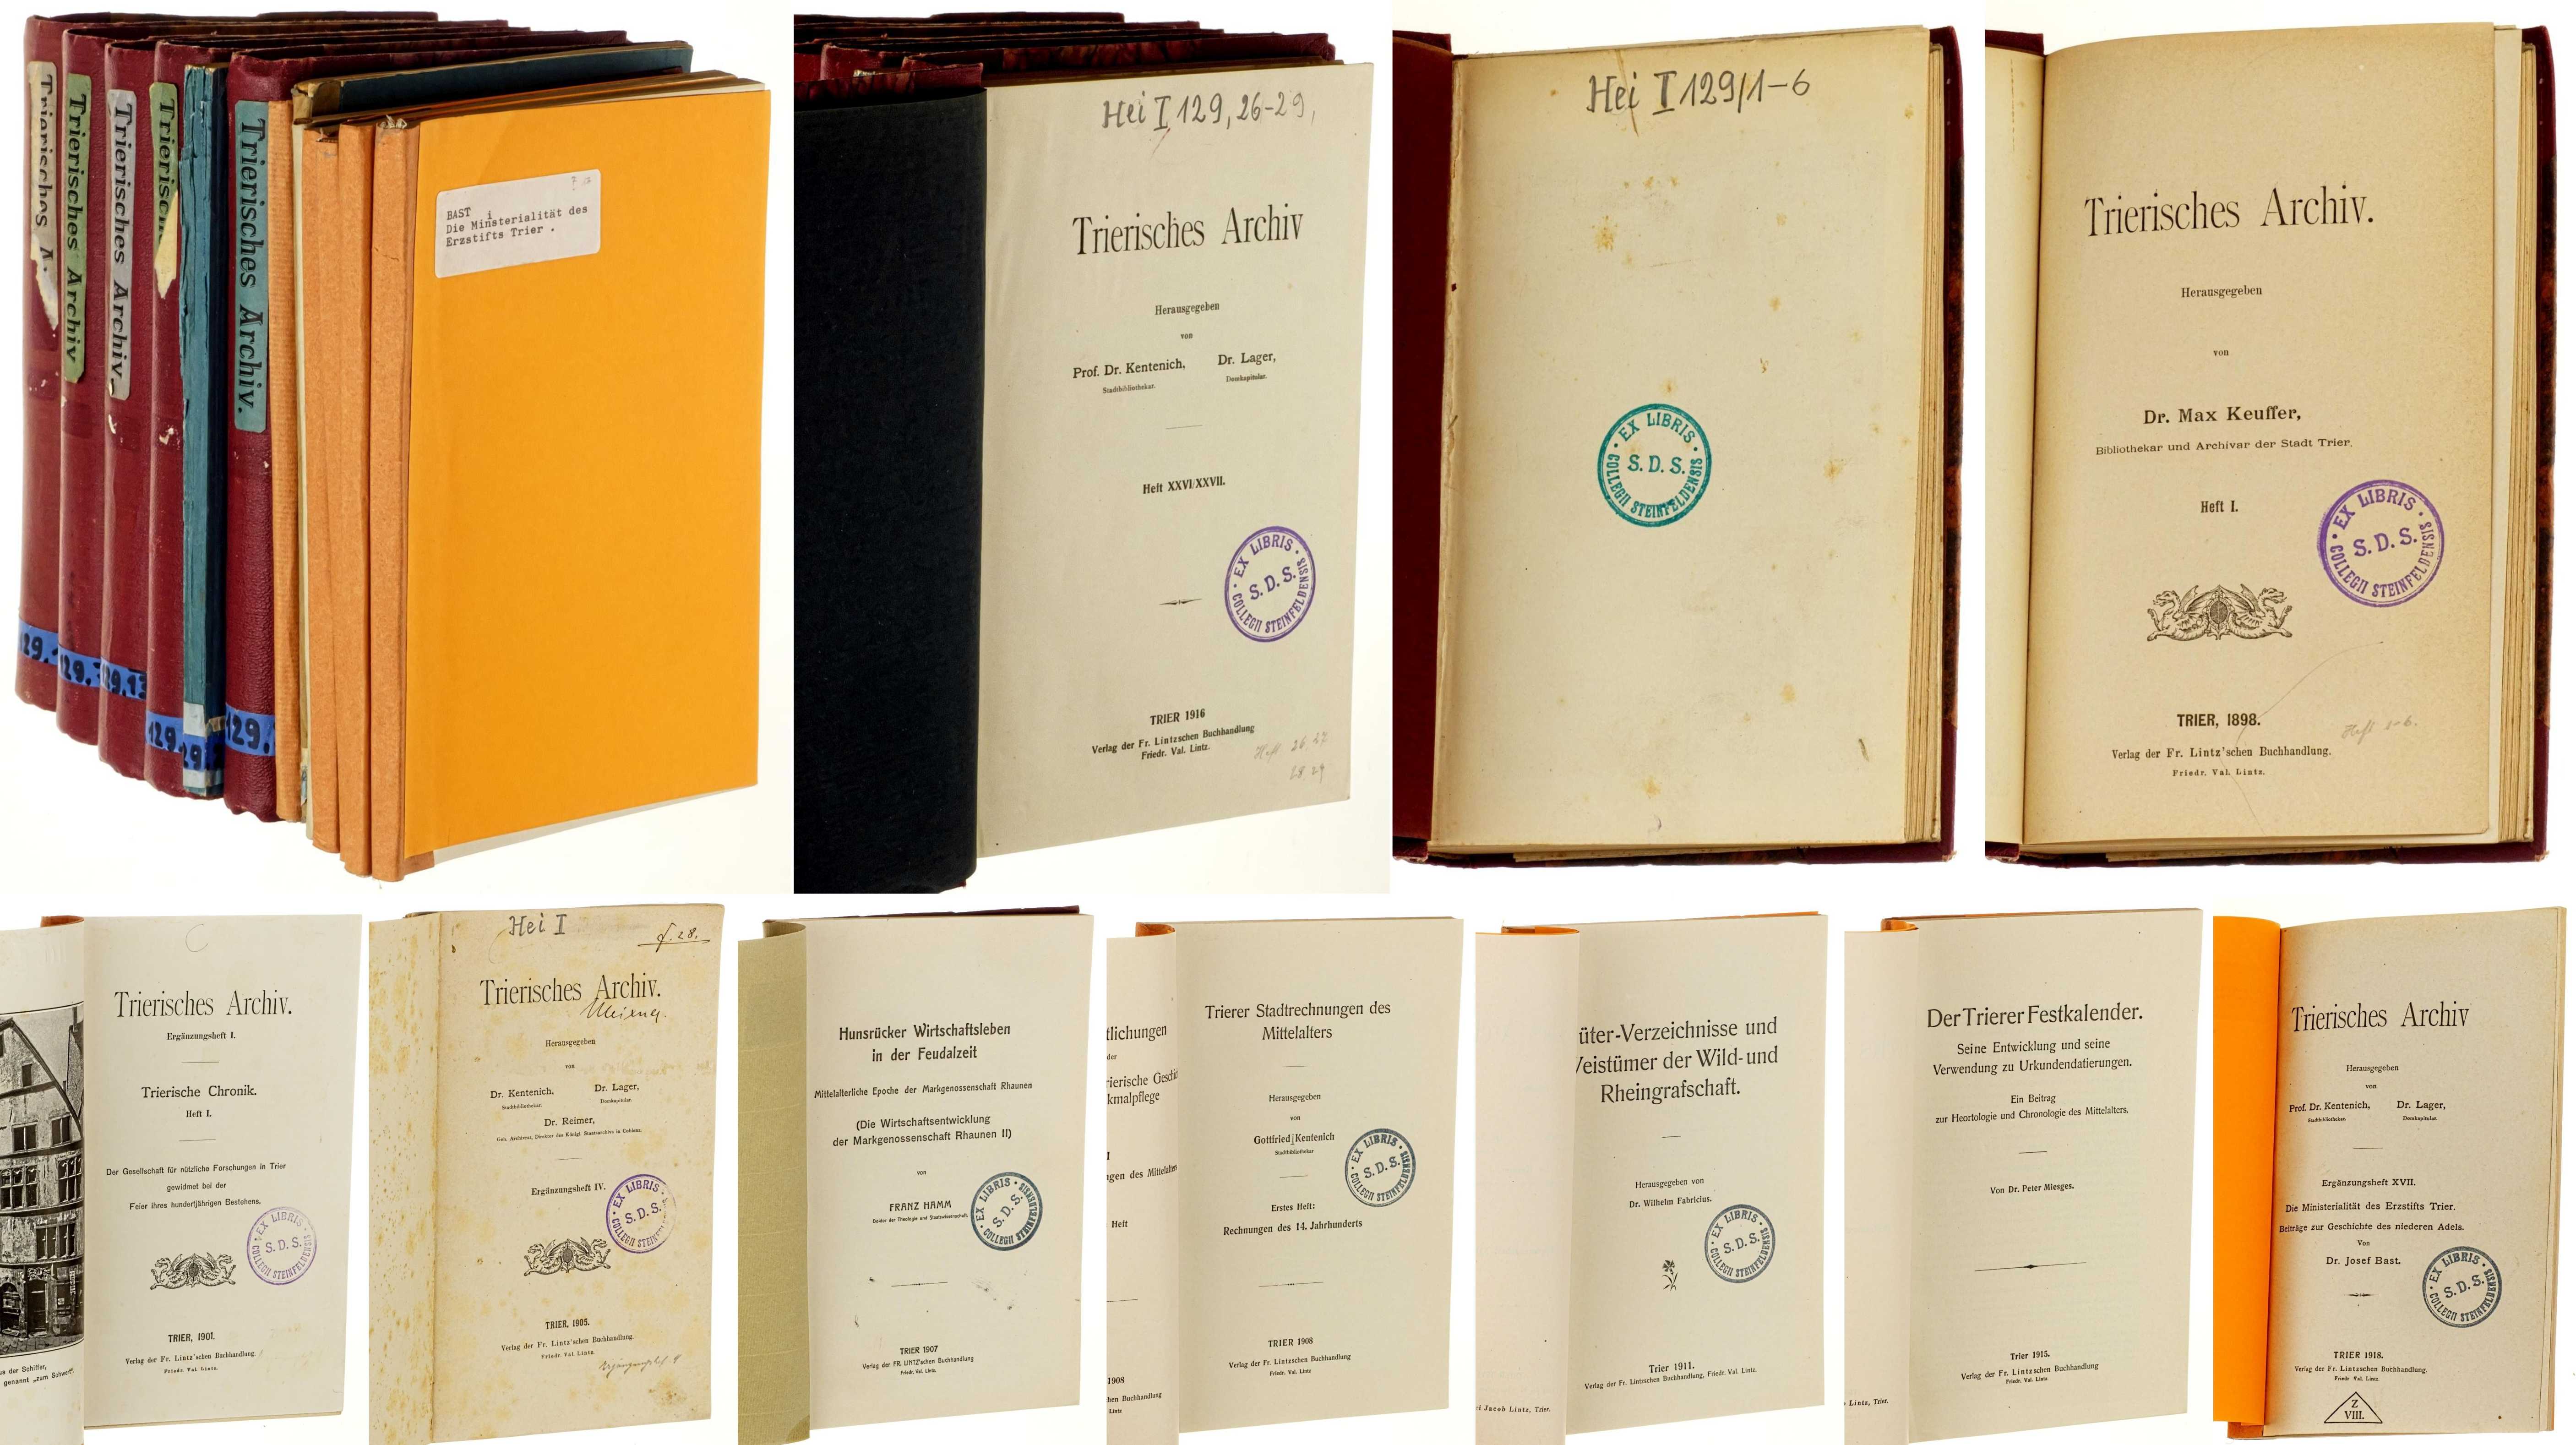   Trierisches Archiv. Hefte 1-29 in 5 Bänden u. 1 Doppelheft (alles) u. 7  Ergänzungshefte (von 17: 1, 4, 8, 9, 12, 15, 17). 